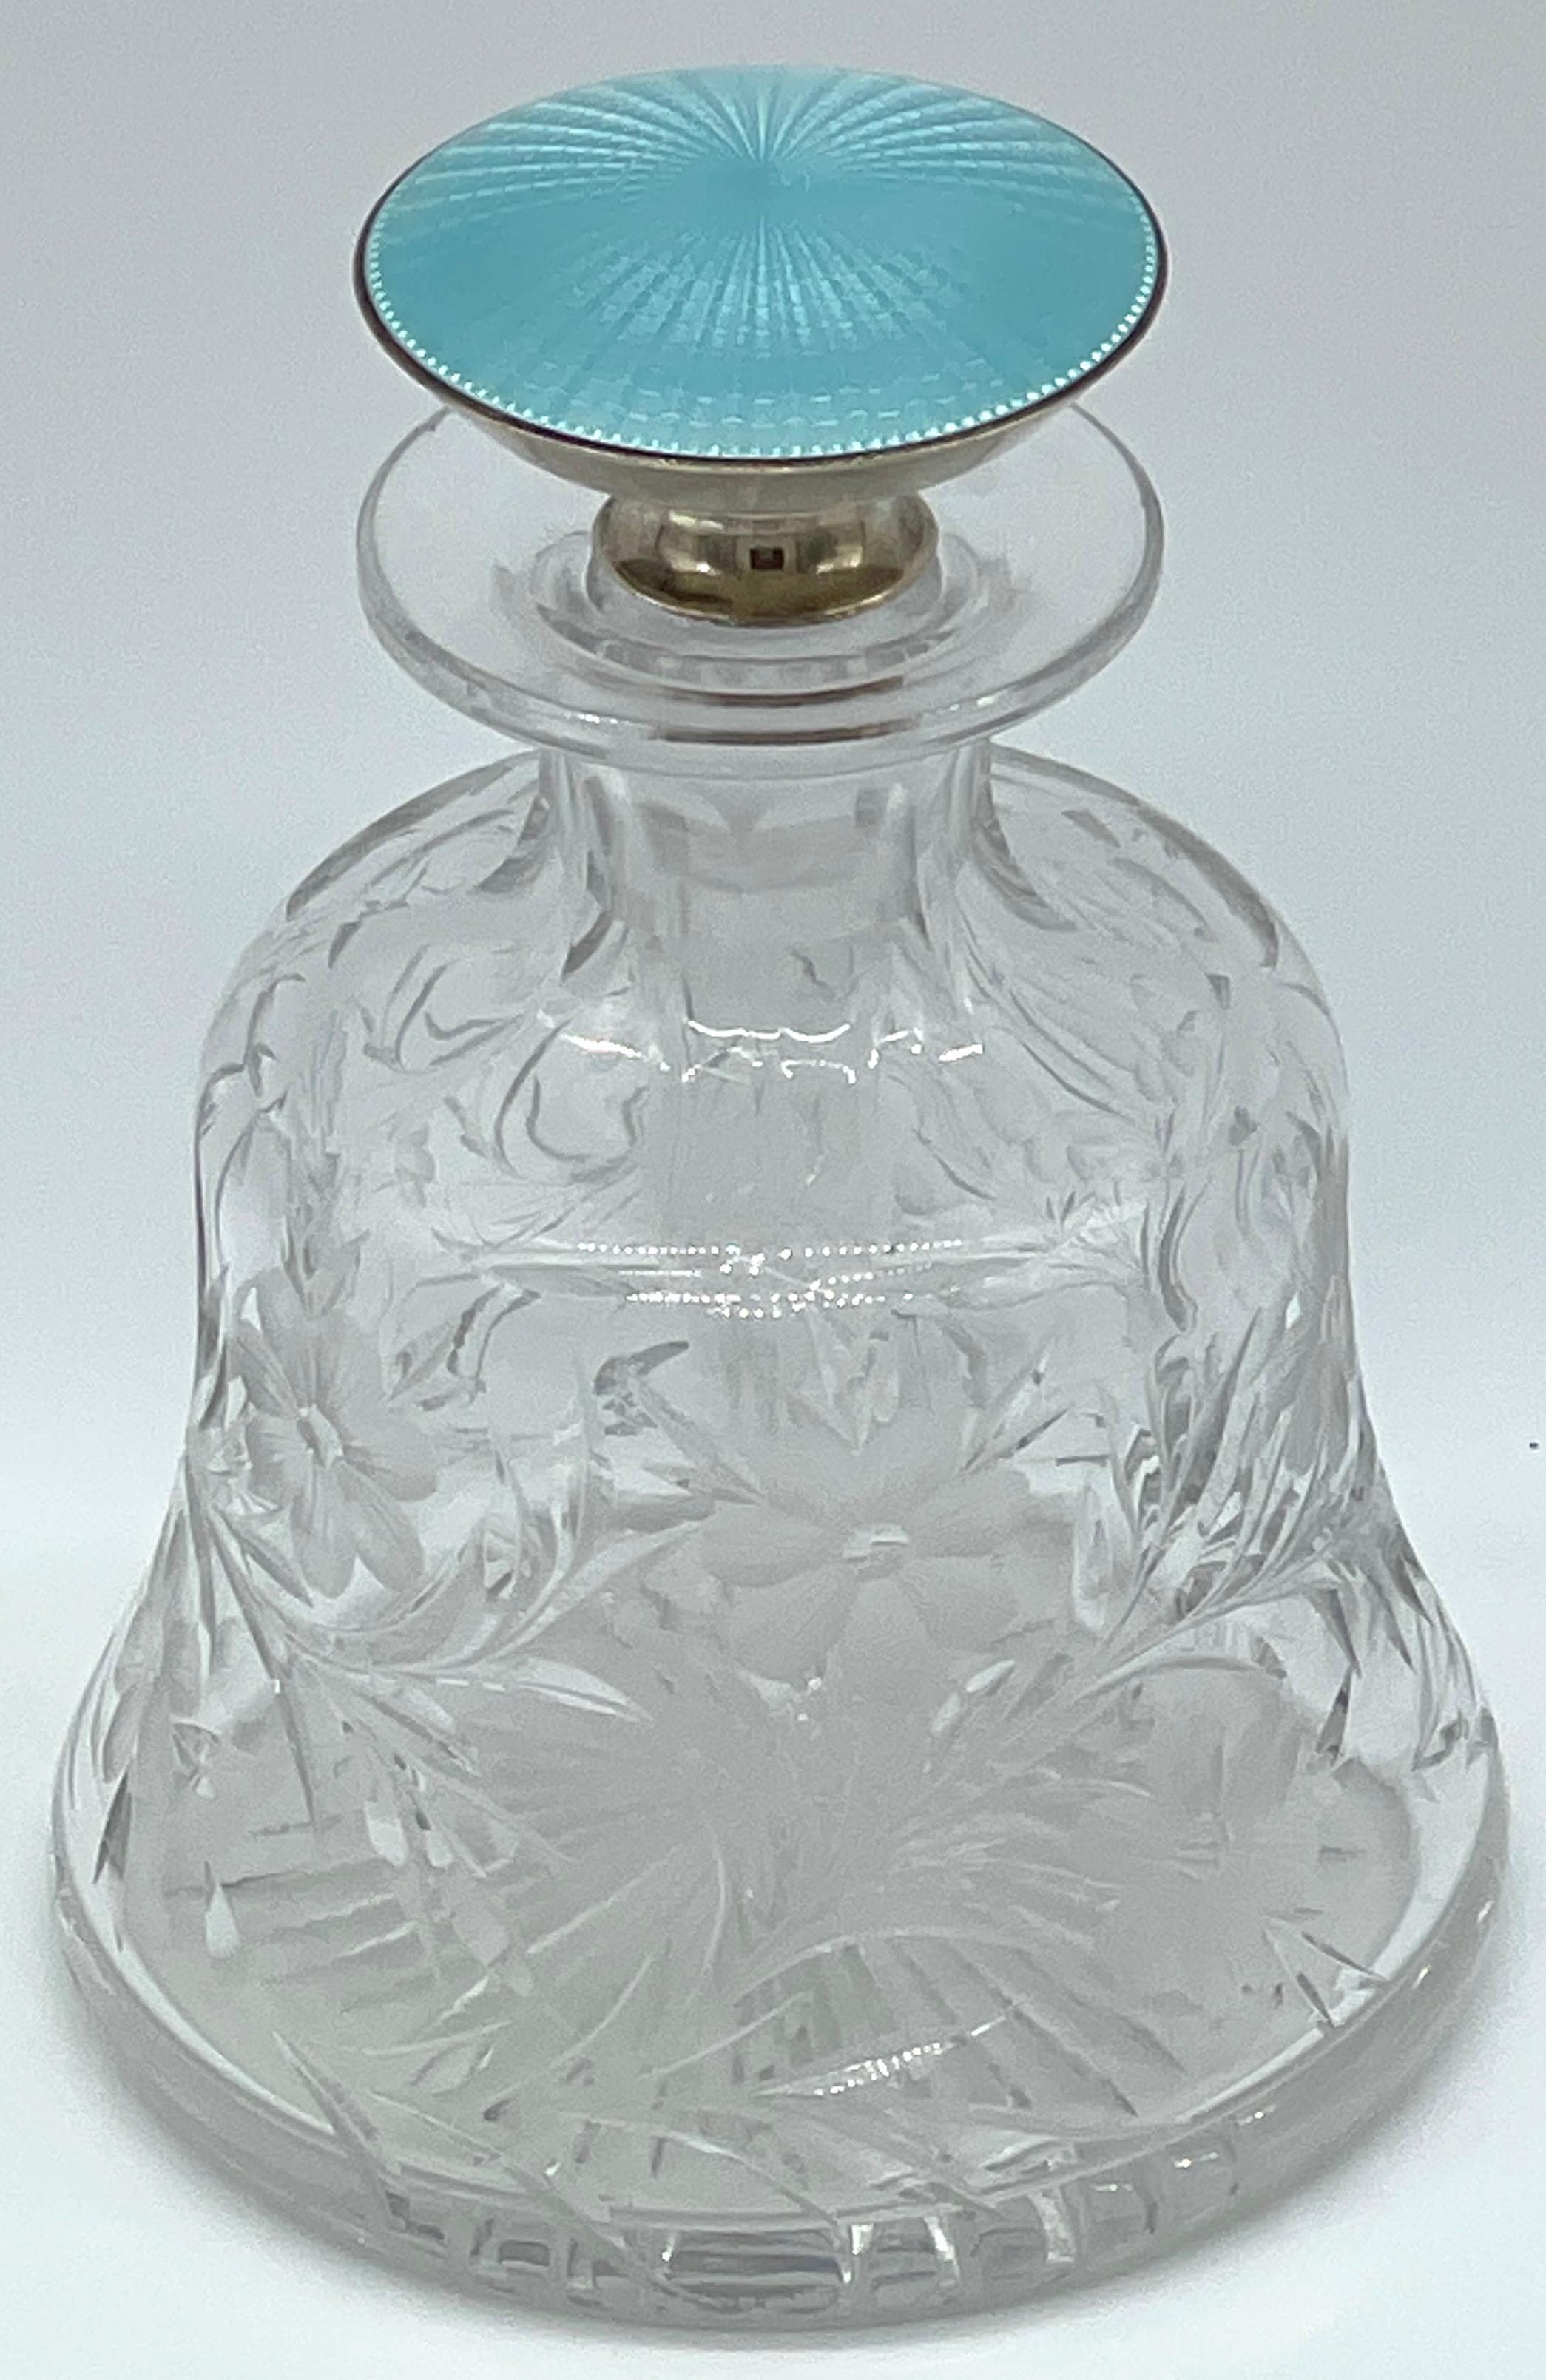 Sterling & Blue Guilloché Emaille Floral Cut Glas Parfümflasche 
USA, ca. 1920er Jahre

Das Parfümfläschchen ist ein schönes Beispiel für ein aus den Vereinigten Staaten stammendes Stück aus Sterlingsilber und blauer Guilloche-Emaille aus den 1920er